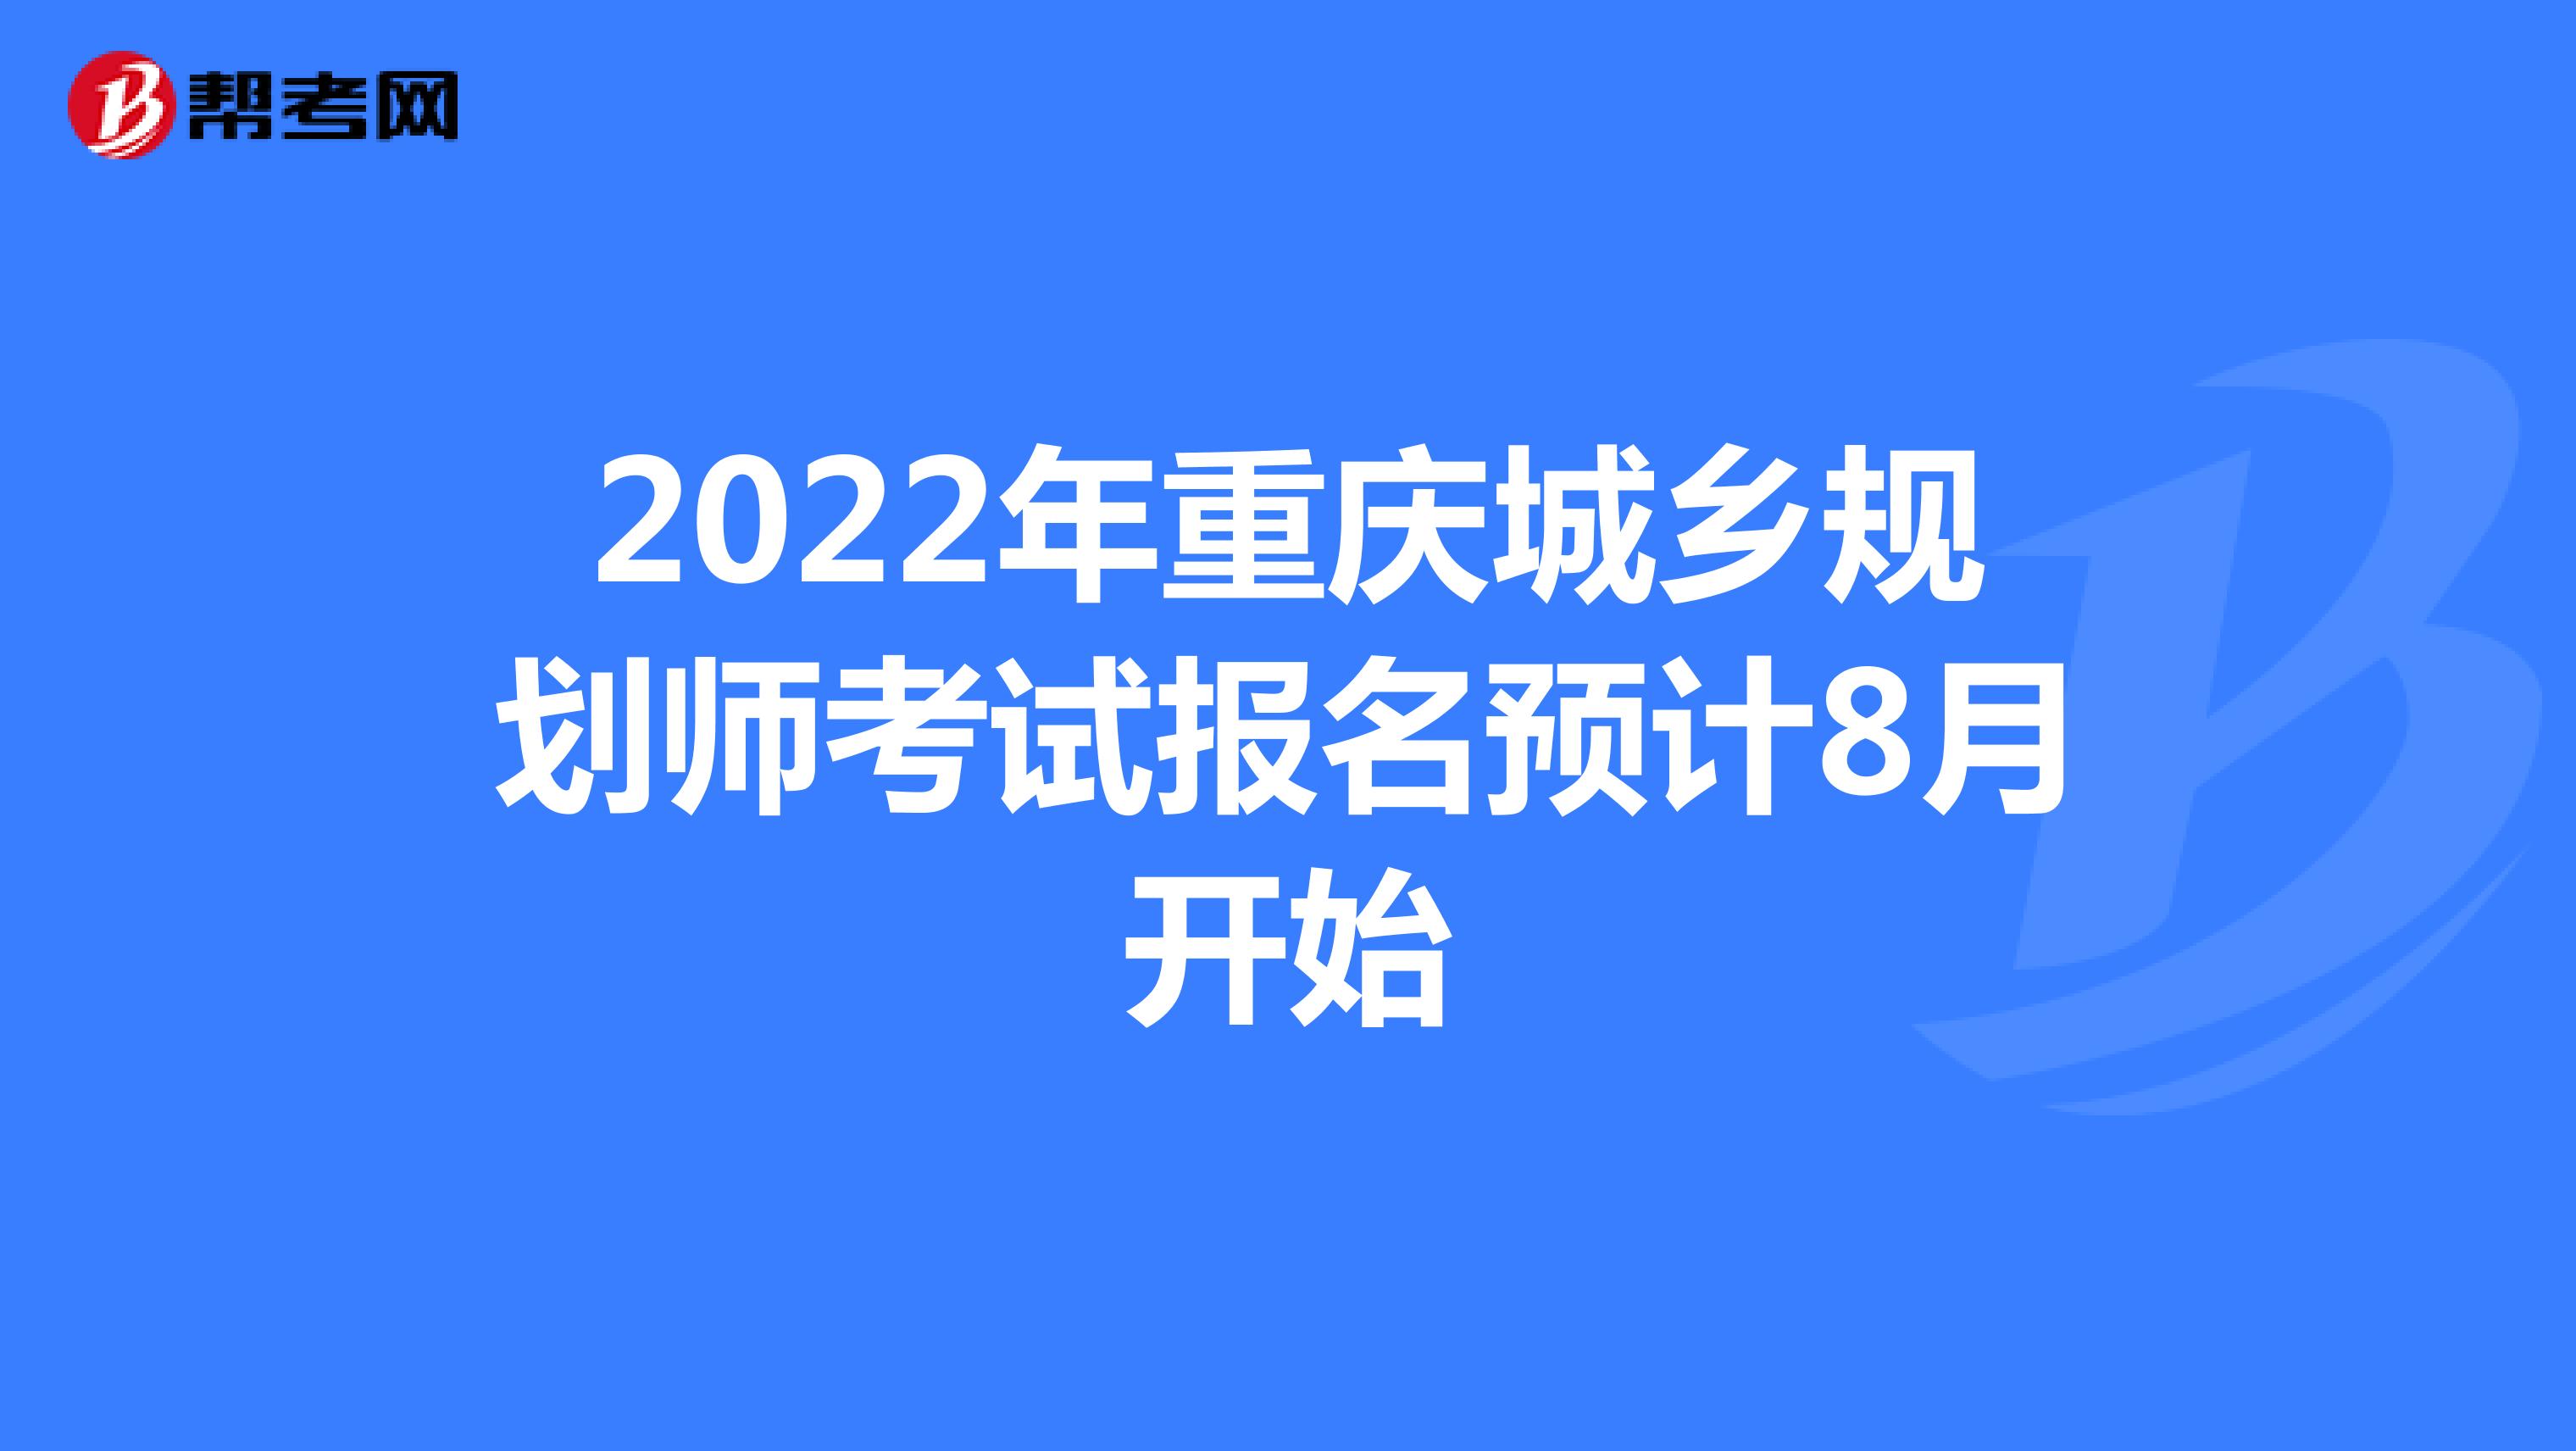 2022年重庆城乡规划师考试报名预计8月开始